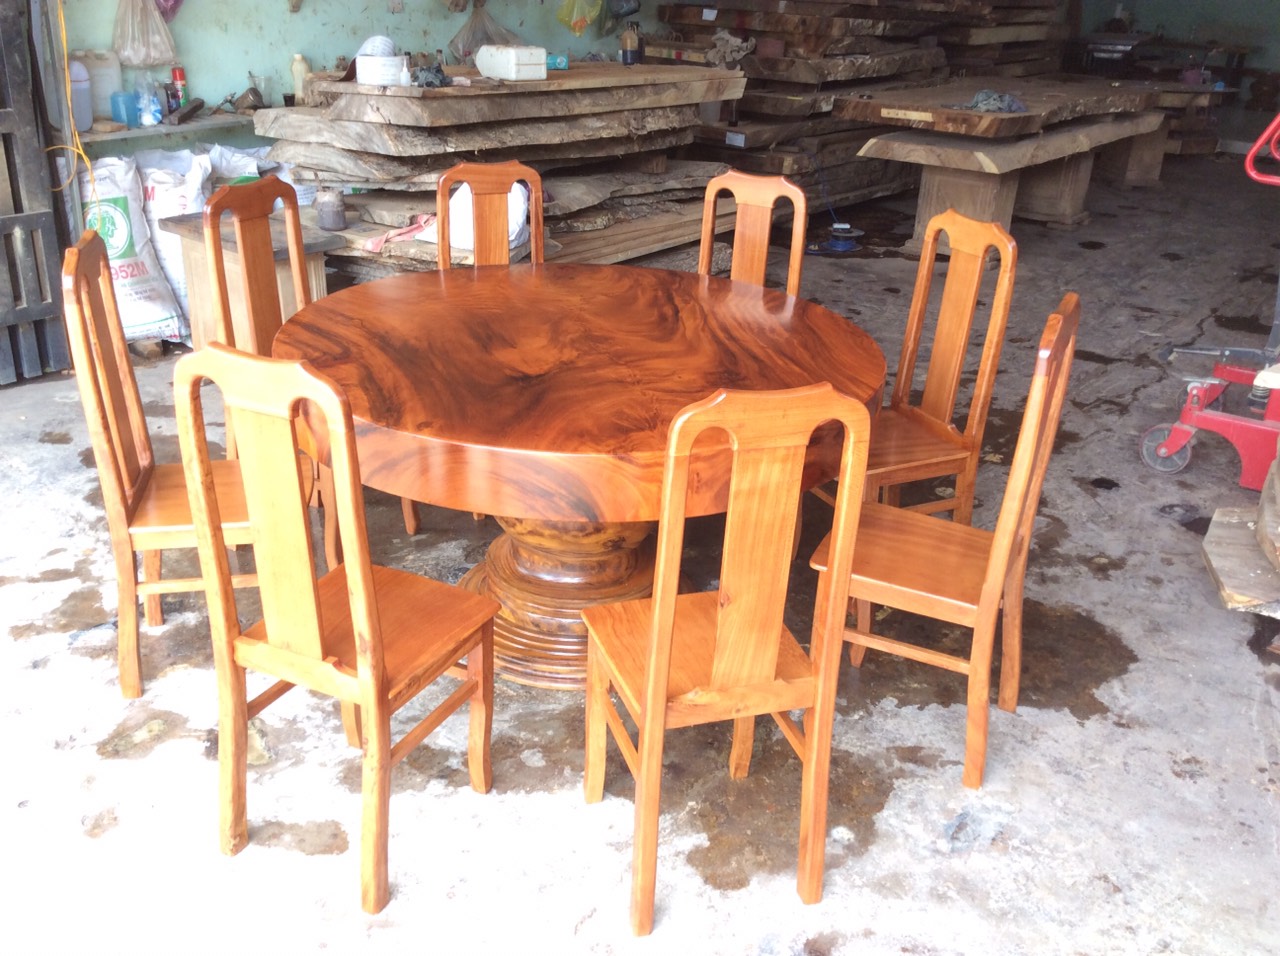 Xưởng sản xuất bàn tròn gỗ me tây nguyên tấm tại tphcm